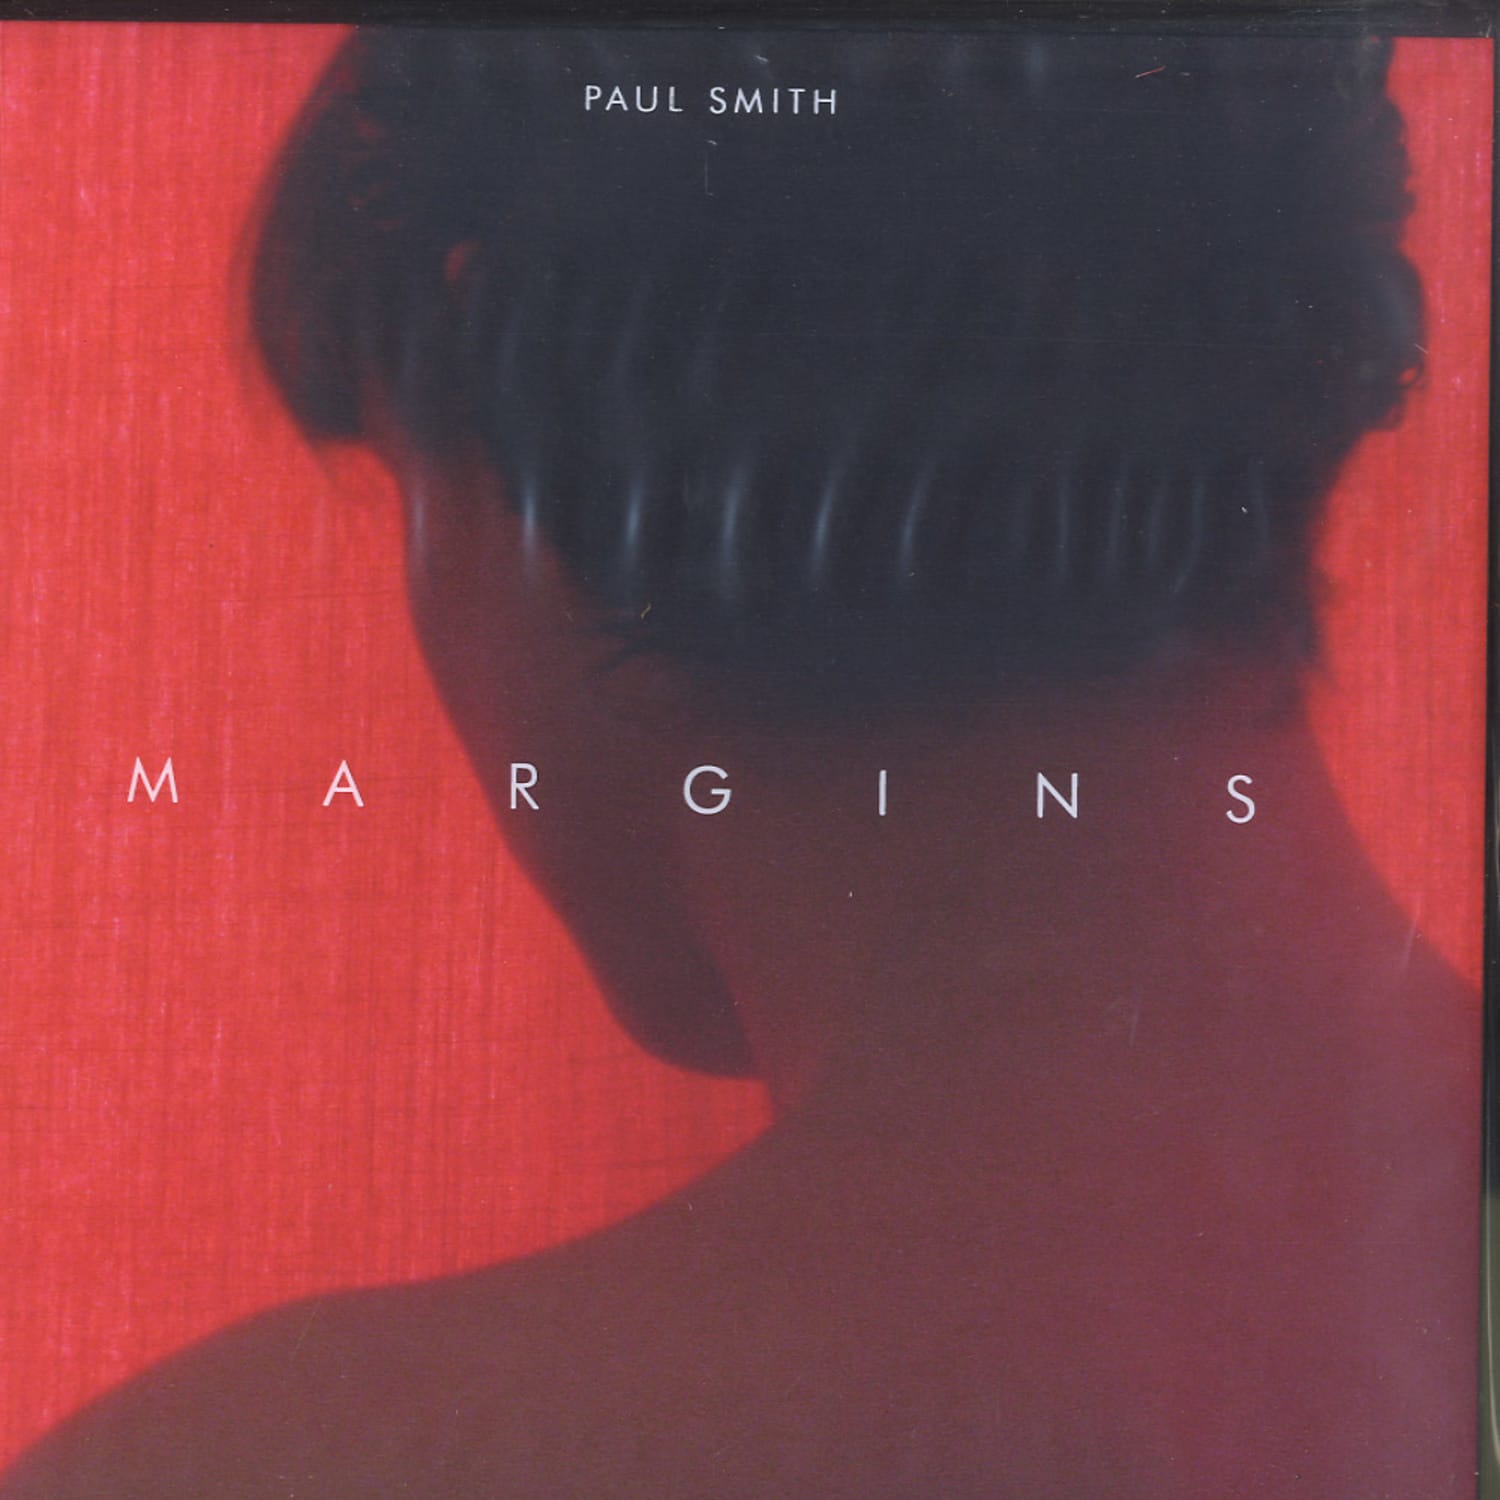 Paul Smith - MARGINS 